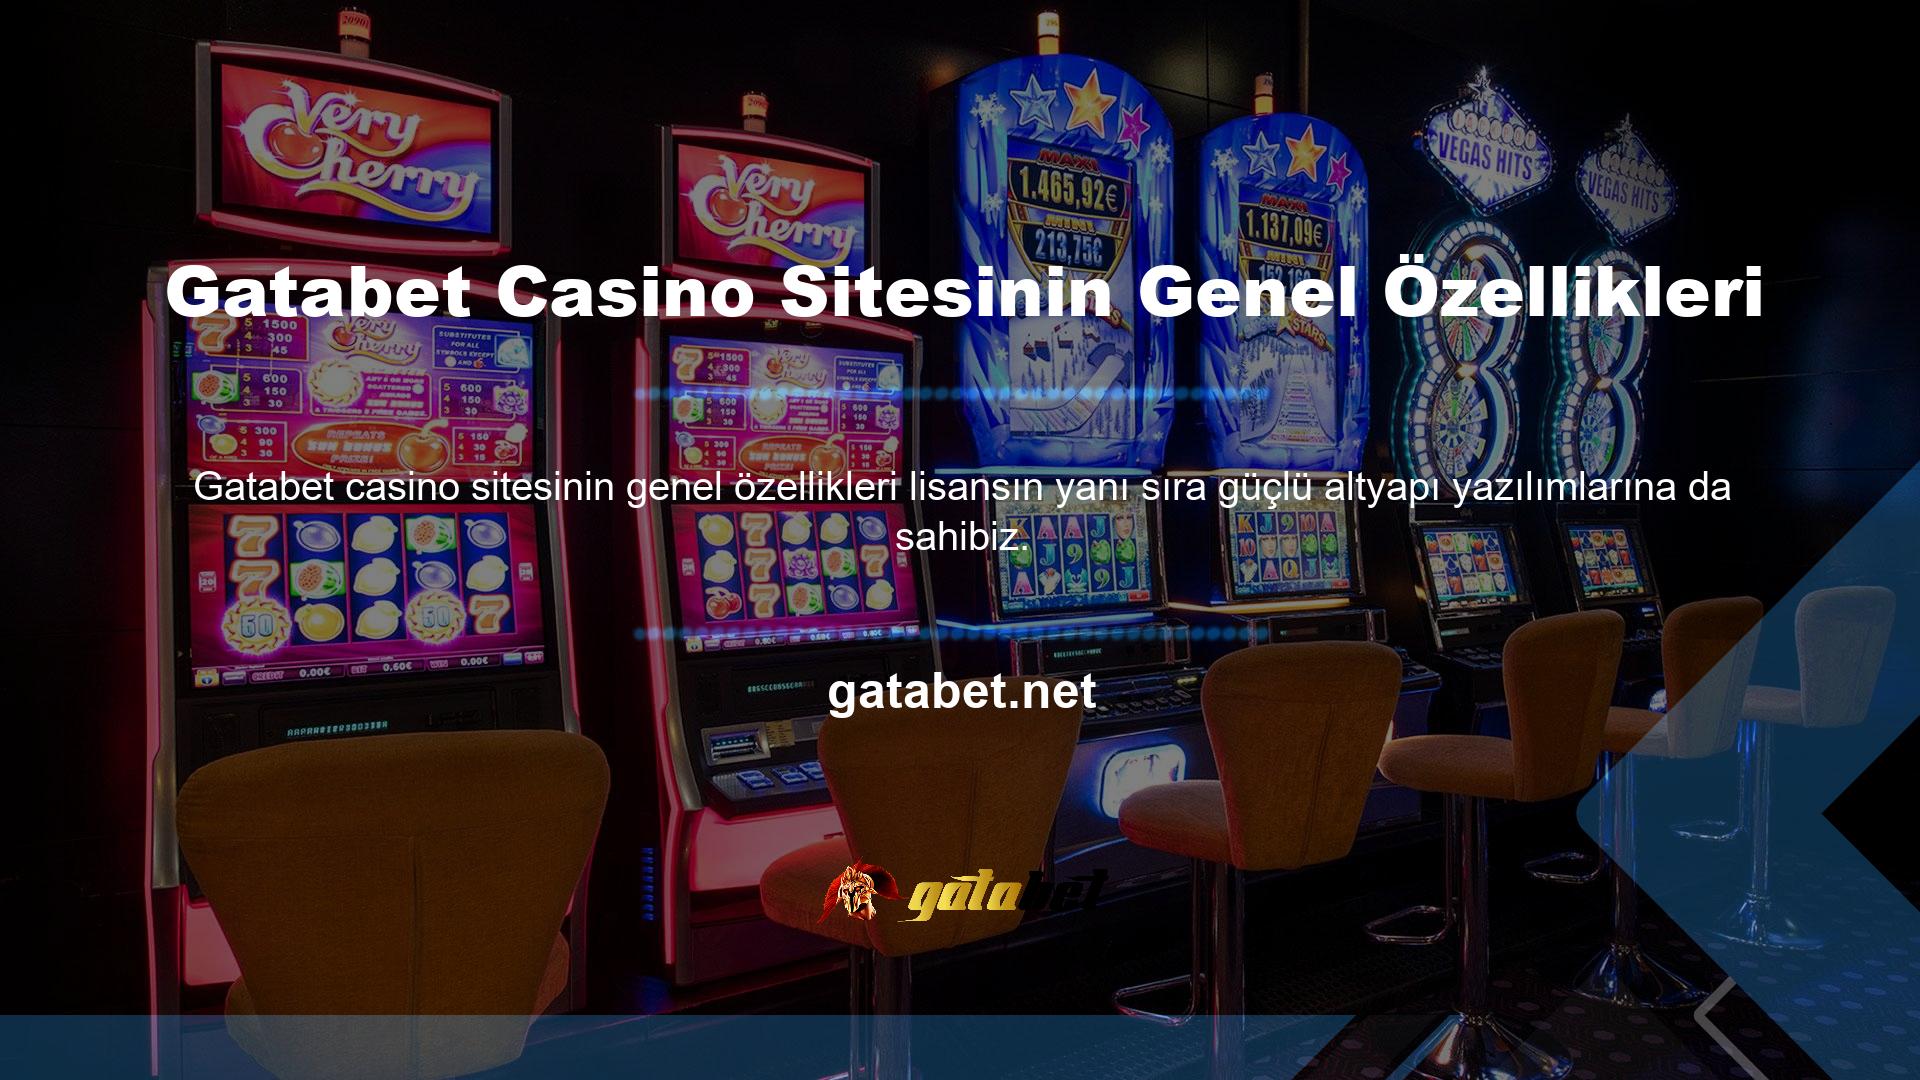 Sahibi Gatabet Casino web sitesinin genel özelliği müşteri memnuniyetine odaklanmasıdır